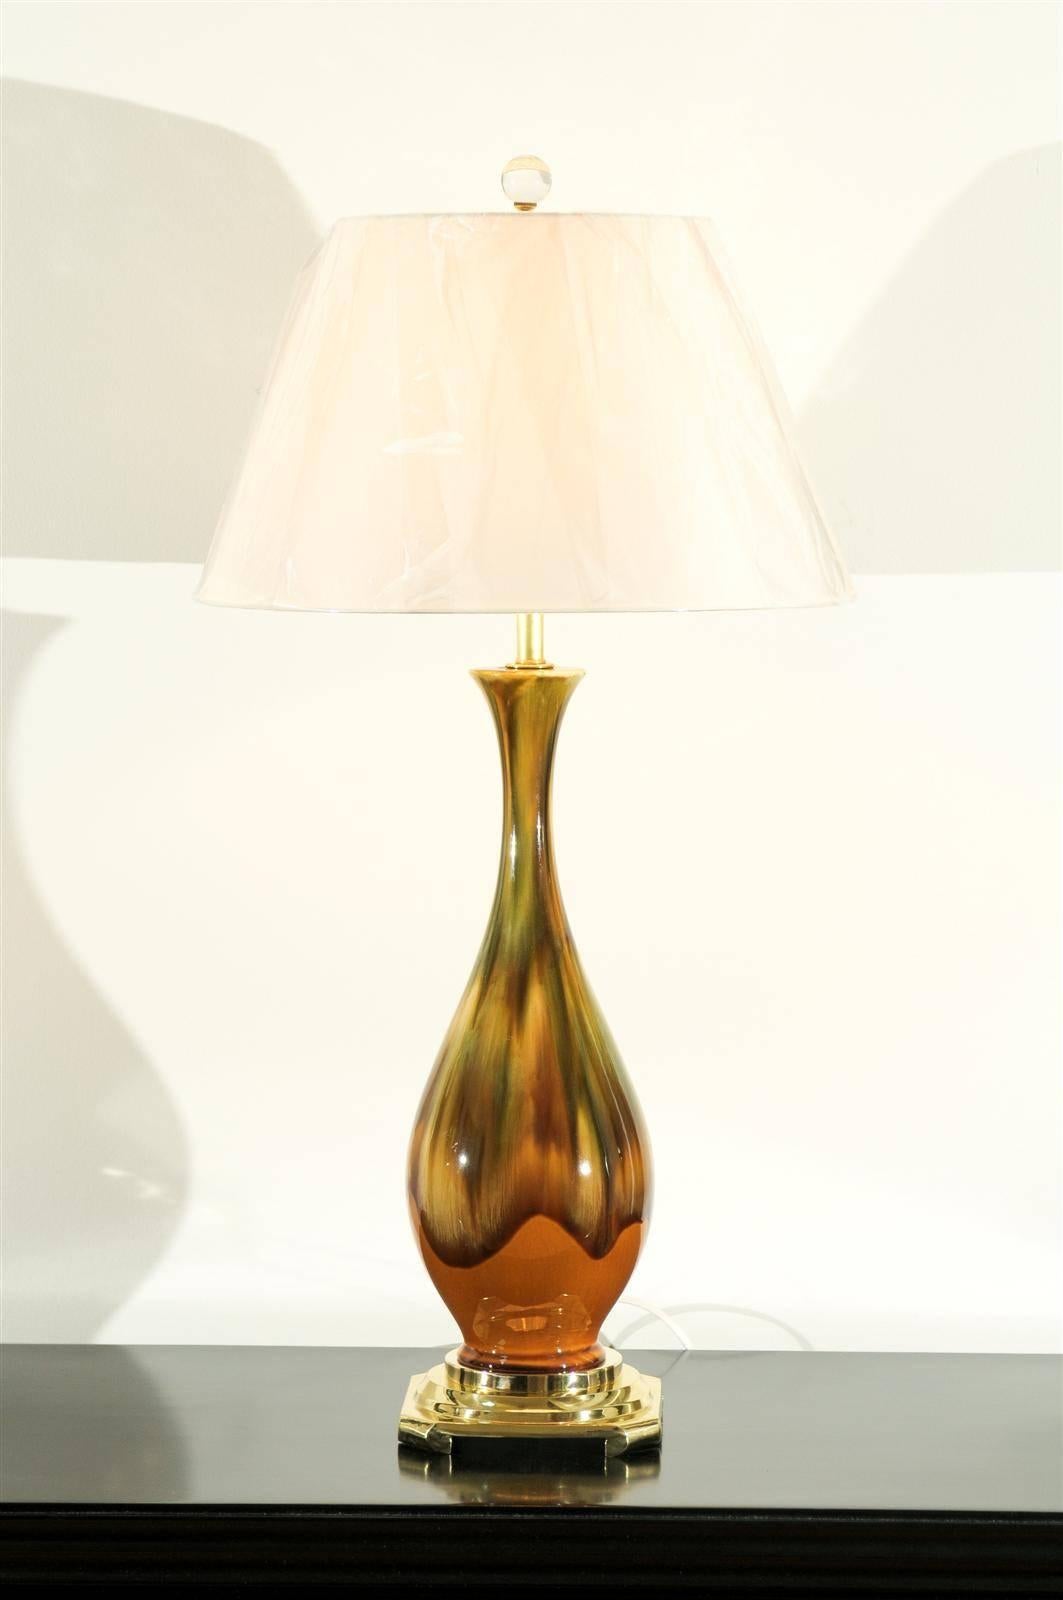 Une superbe paire de lampes vintage en céramique, vers 1970. Technique de glaçage au goutte-à-goutte avec une combinaison de couleurs étonnante d'ocre jaune, de caramel et de vert. Des pièces magnifiquement réalisées avec une riche qualité